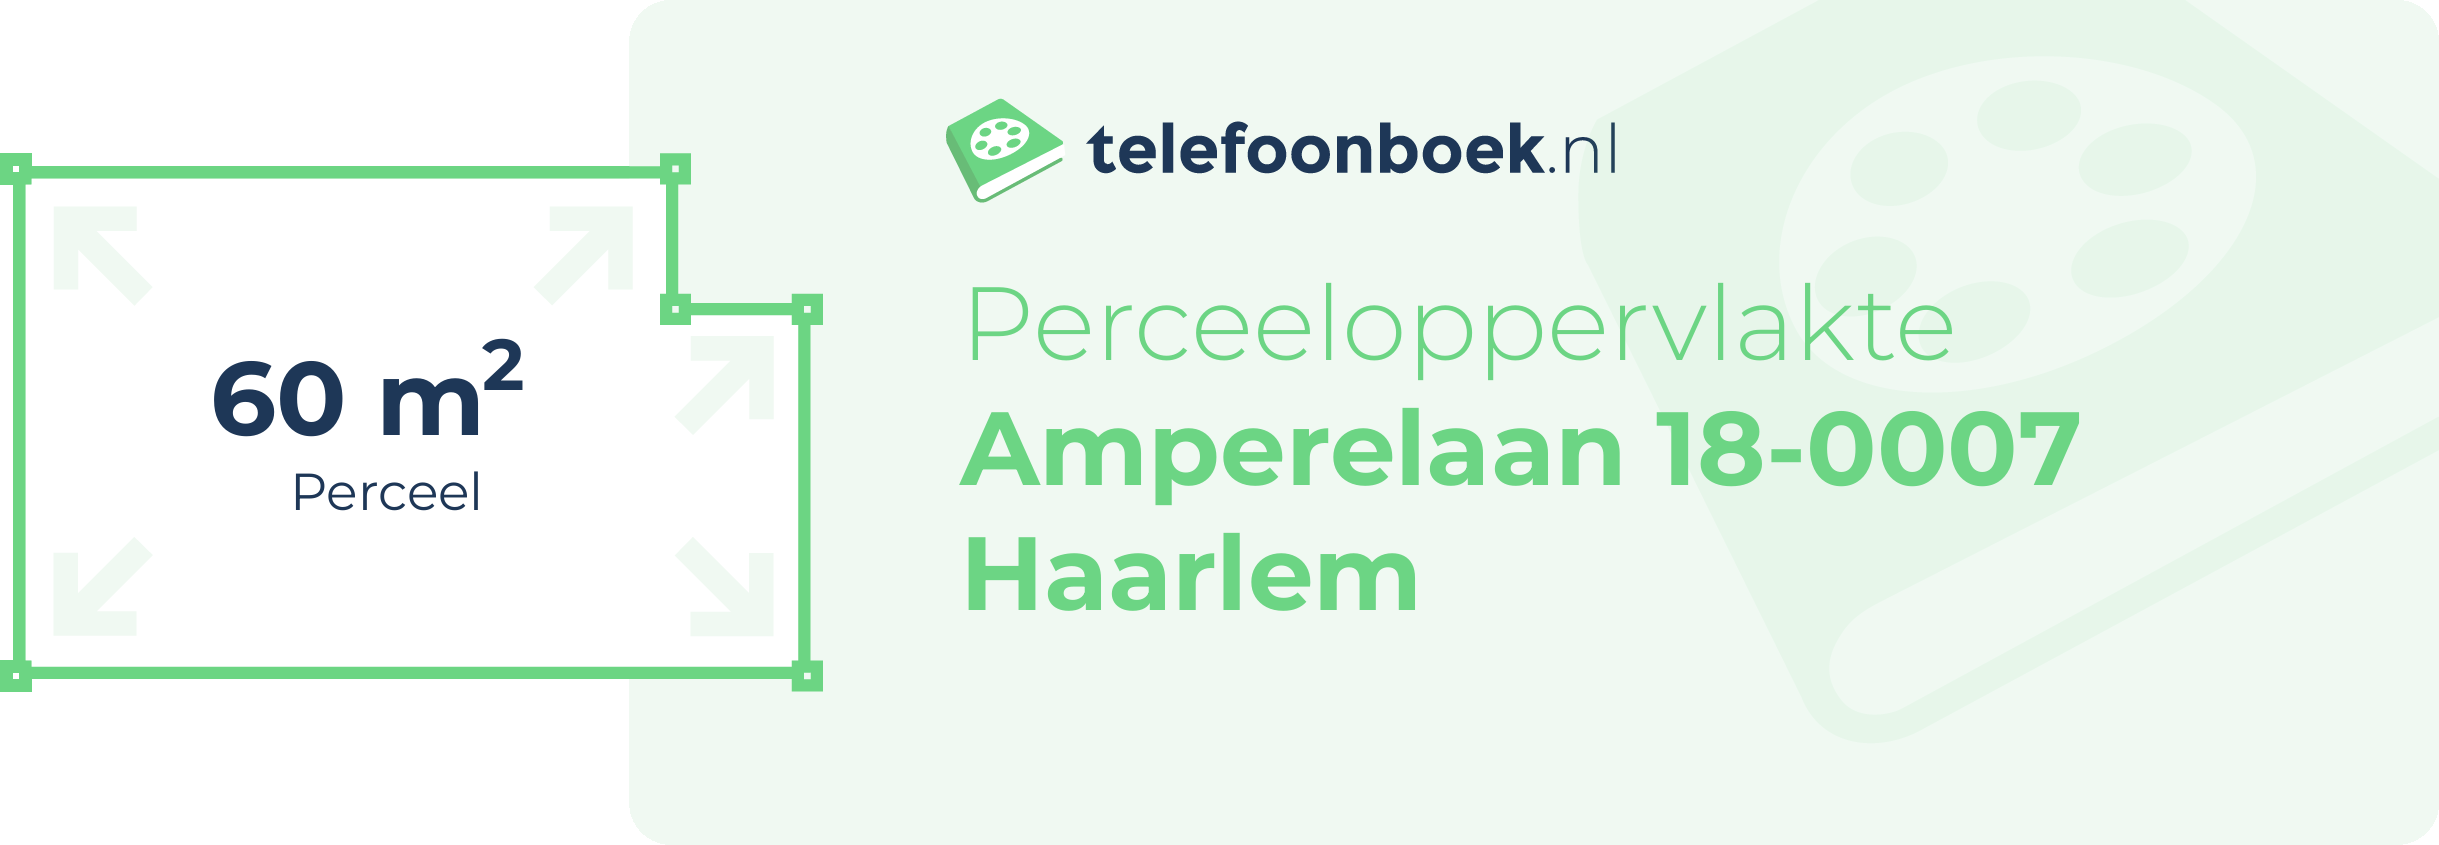 Perceeloppervlakte Amperelaan 18-0007 Haarlem